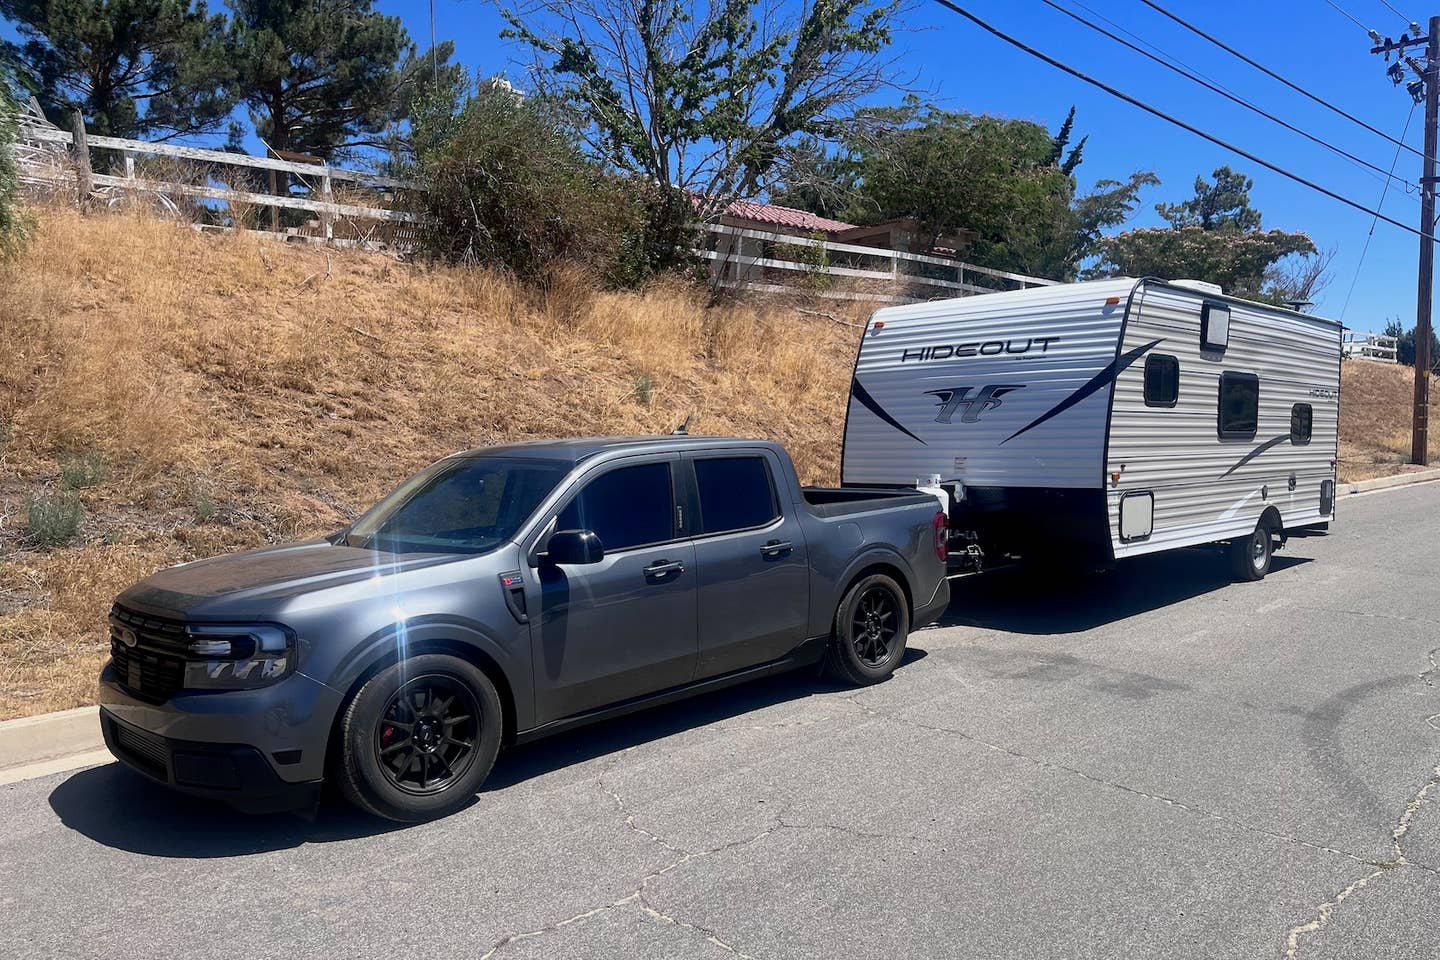 Ivan Gonzalez's 2.3-liter EcoBoost swapped Ford Maverick pulling a camper.